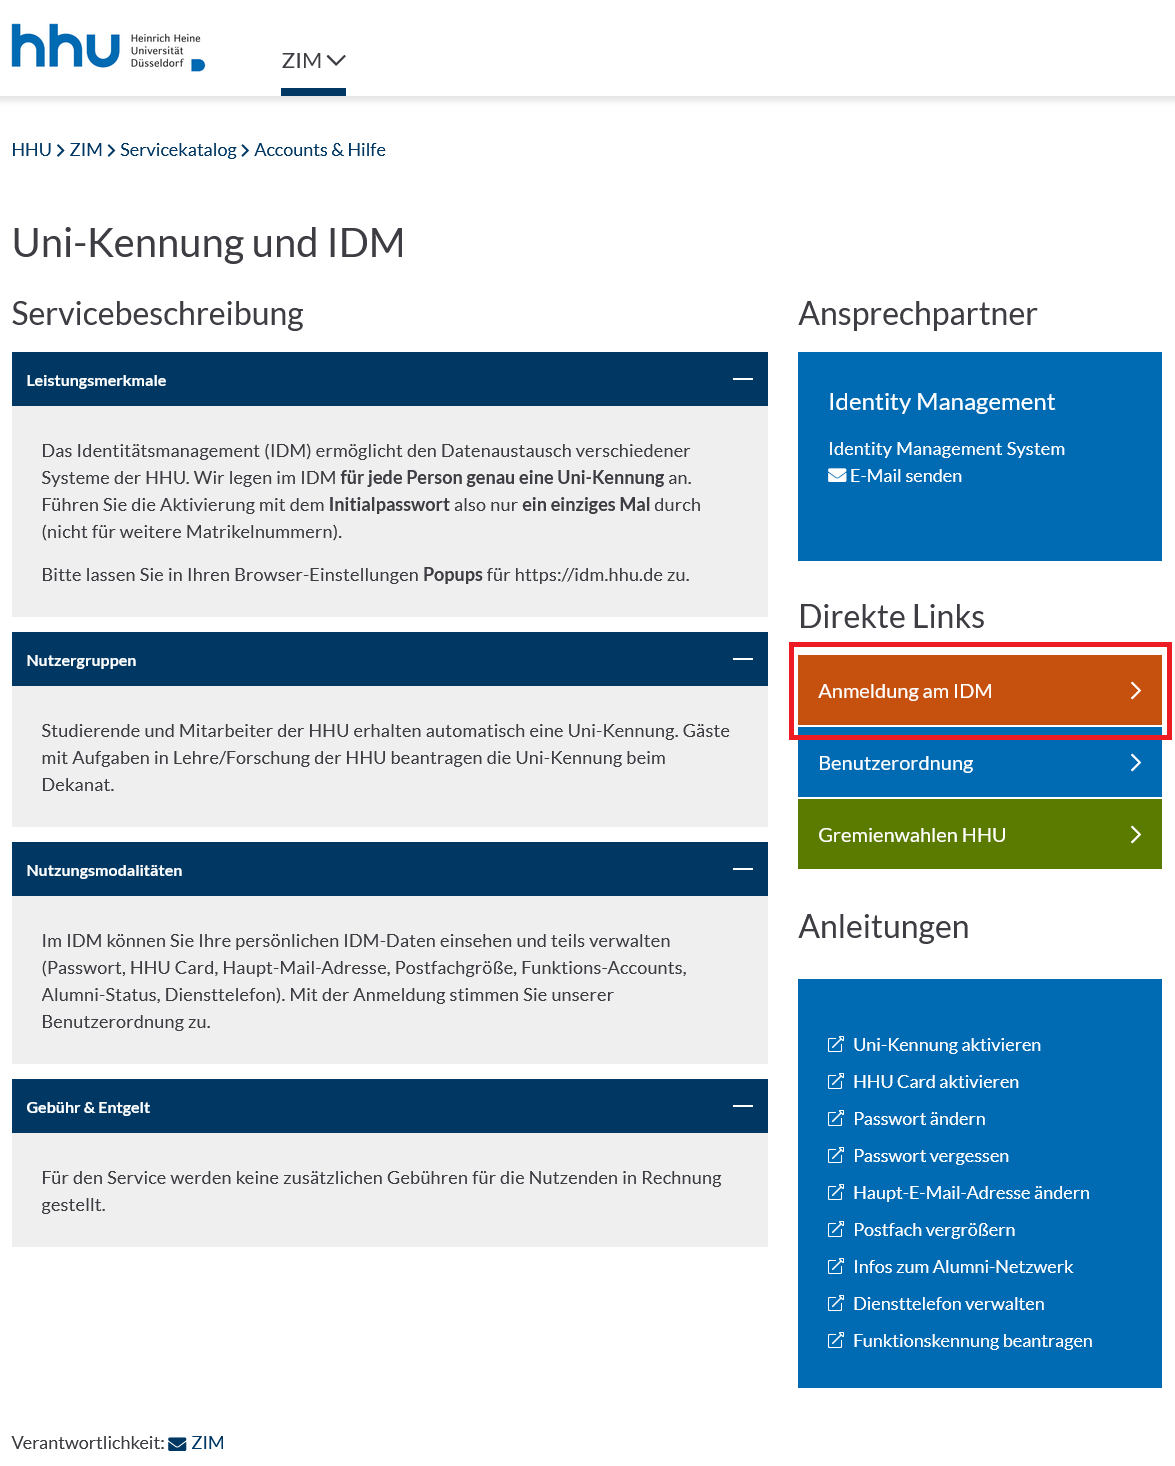 Bild idm.hhu.de-Seite. hhu-Seite 'Uni-Kennung und IDM', rechts unter 'Direkte Links' erster Knopf orange 'Anmeldung am IDM'